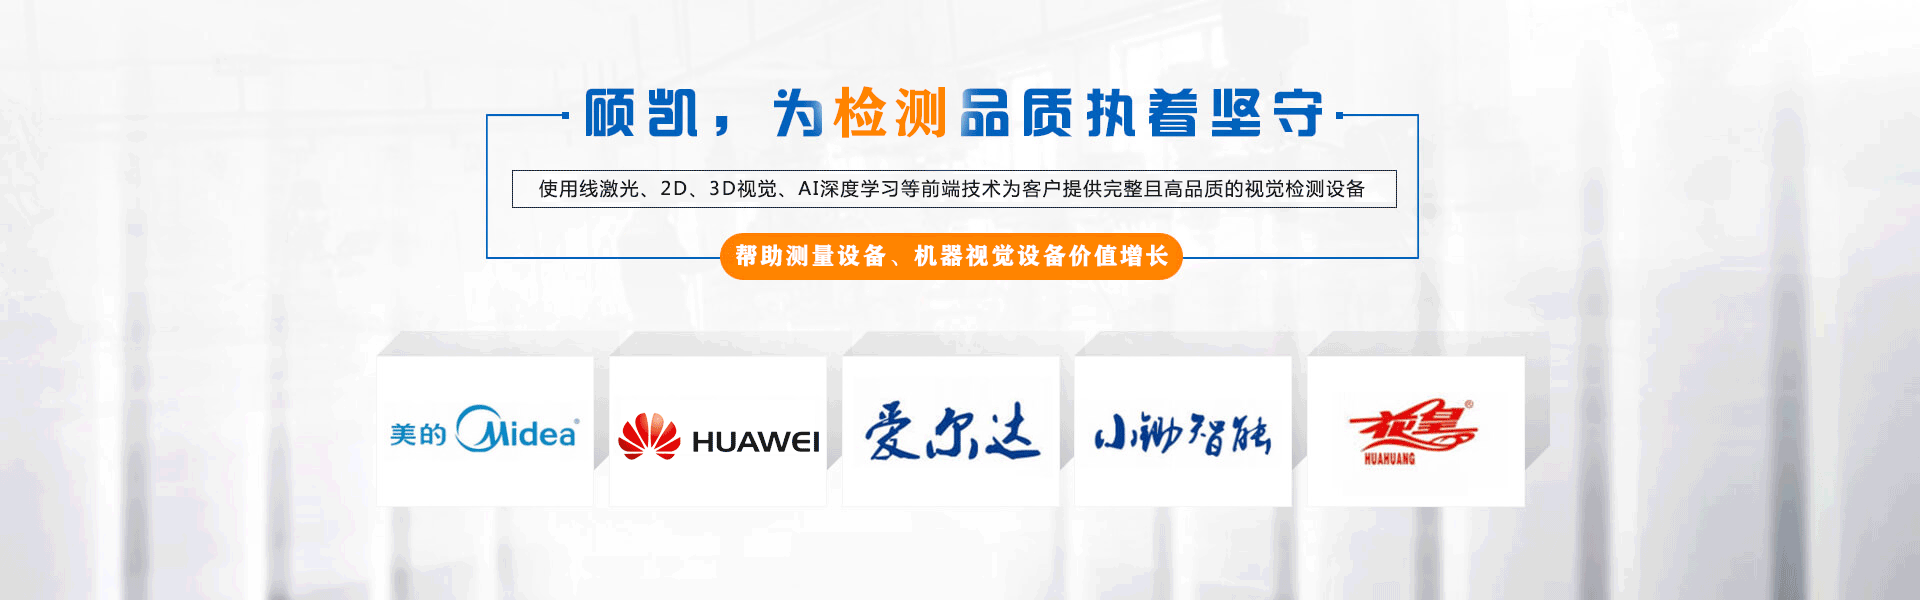 乐虎国际lehu科技banner